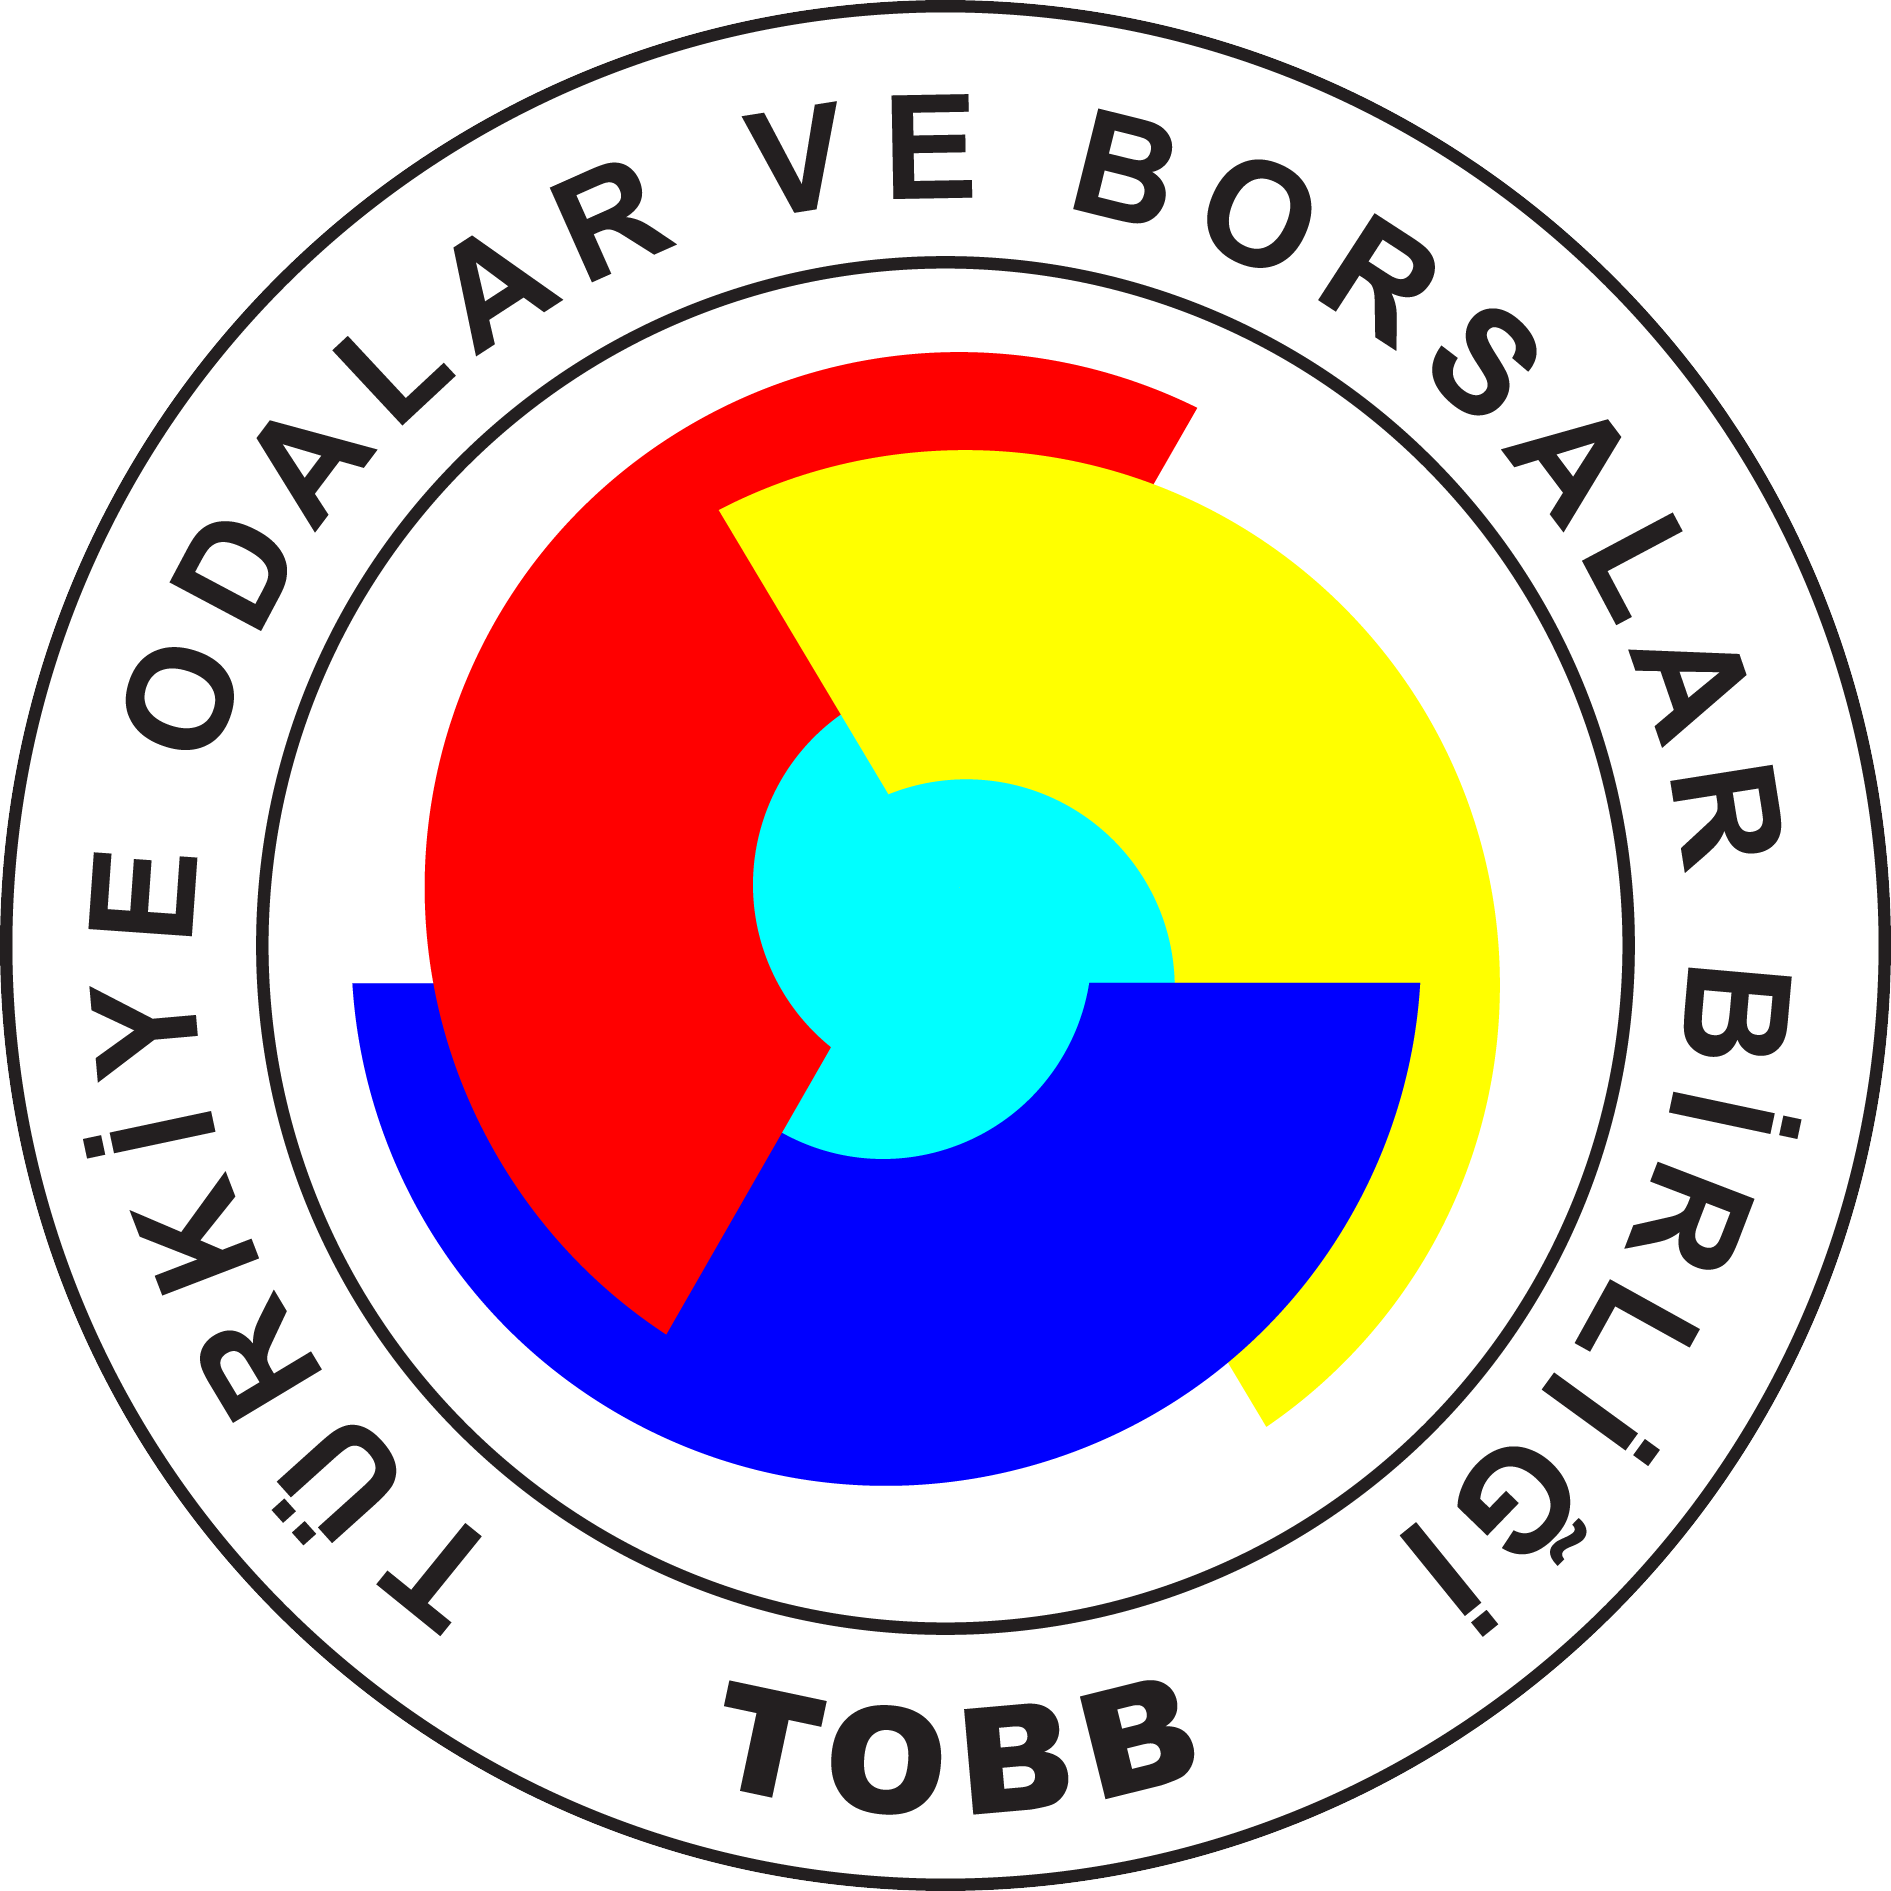 Bitlis'in Tatvan ilçesinde, Milli Eğitim Bakanlığı ile Türkiye Odalar ve Borsalar Birliği (TOBB) arasında imzalanan protokolle 8 derslikli okul inşa edildi.